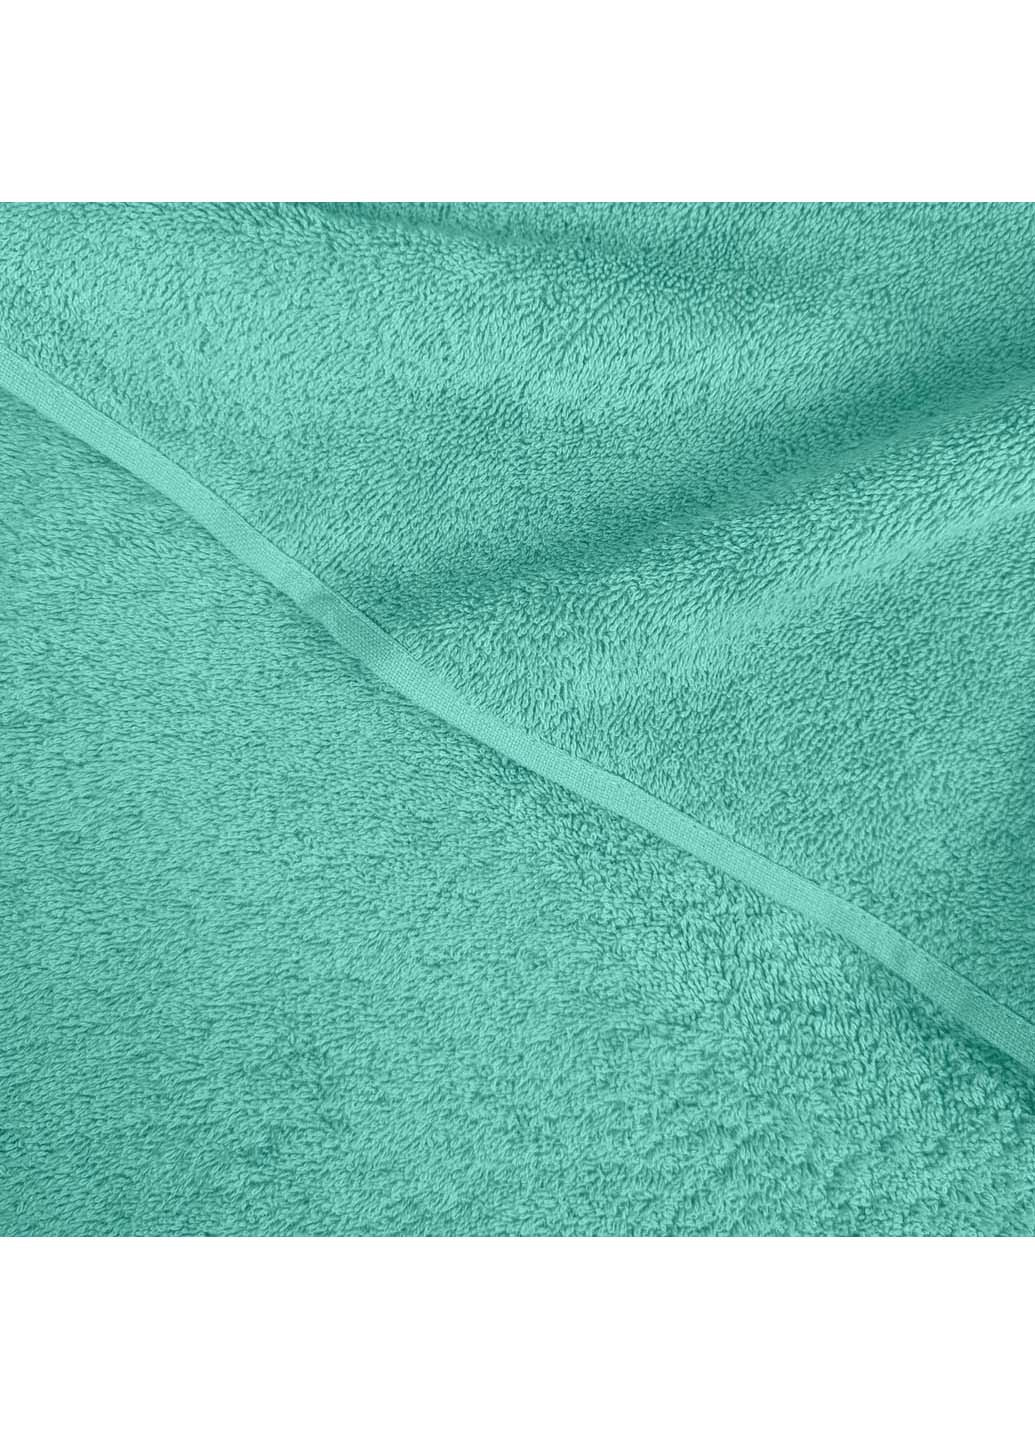 Cosas полотенца махровые agave 3 шт мятный производство -